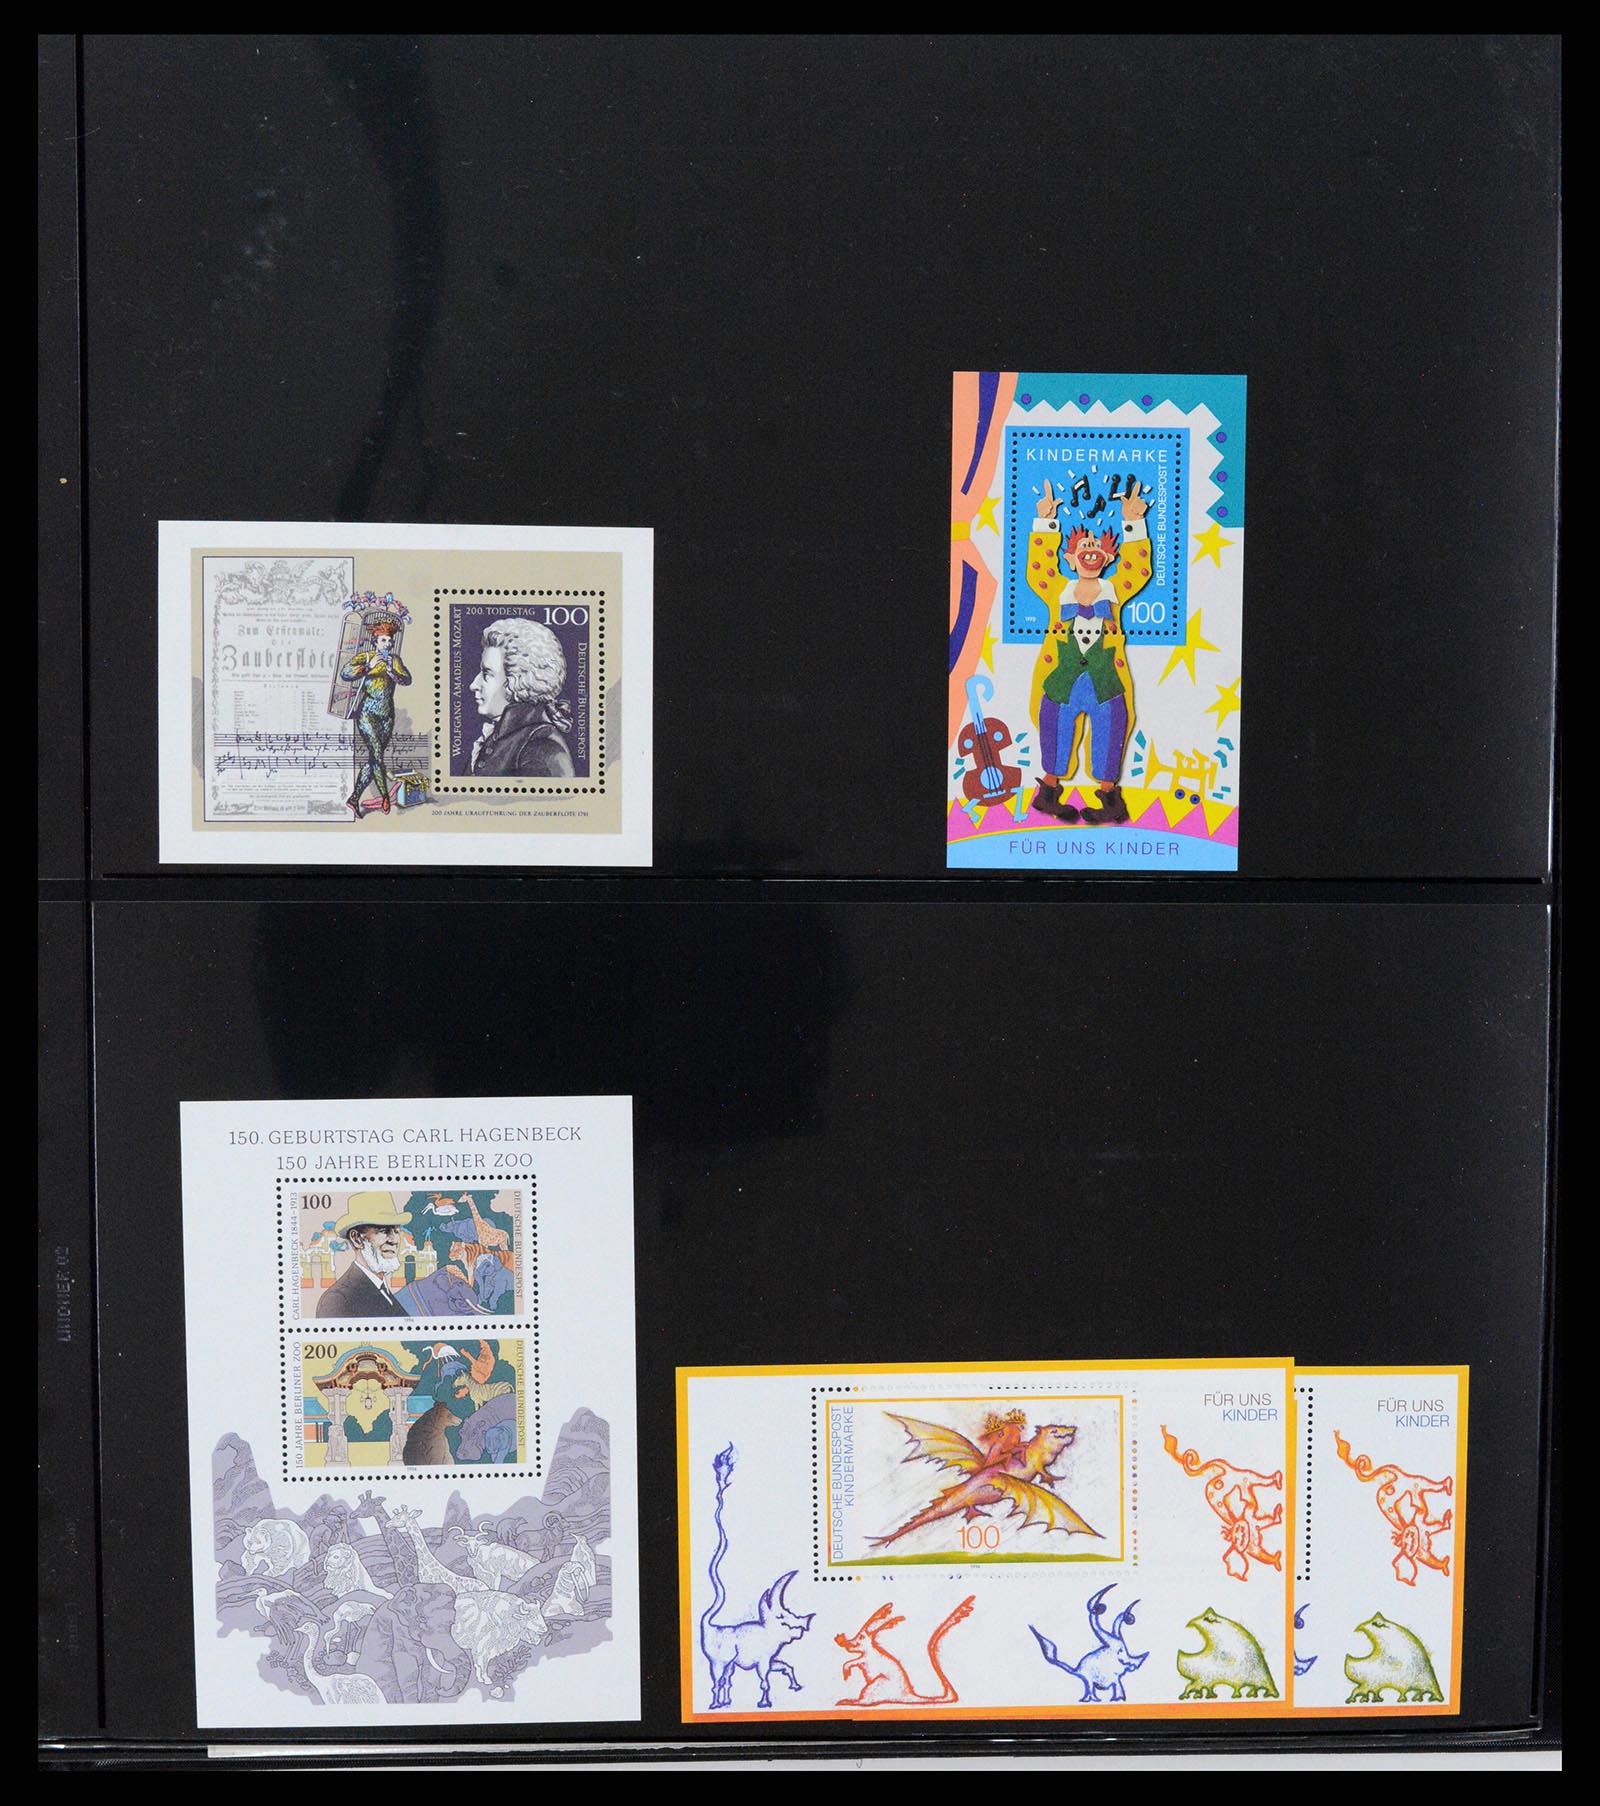 37345 039 - Stamp collection 37345 European countries souvenir sheets.